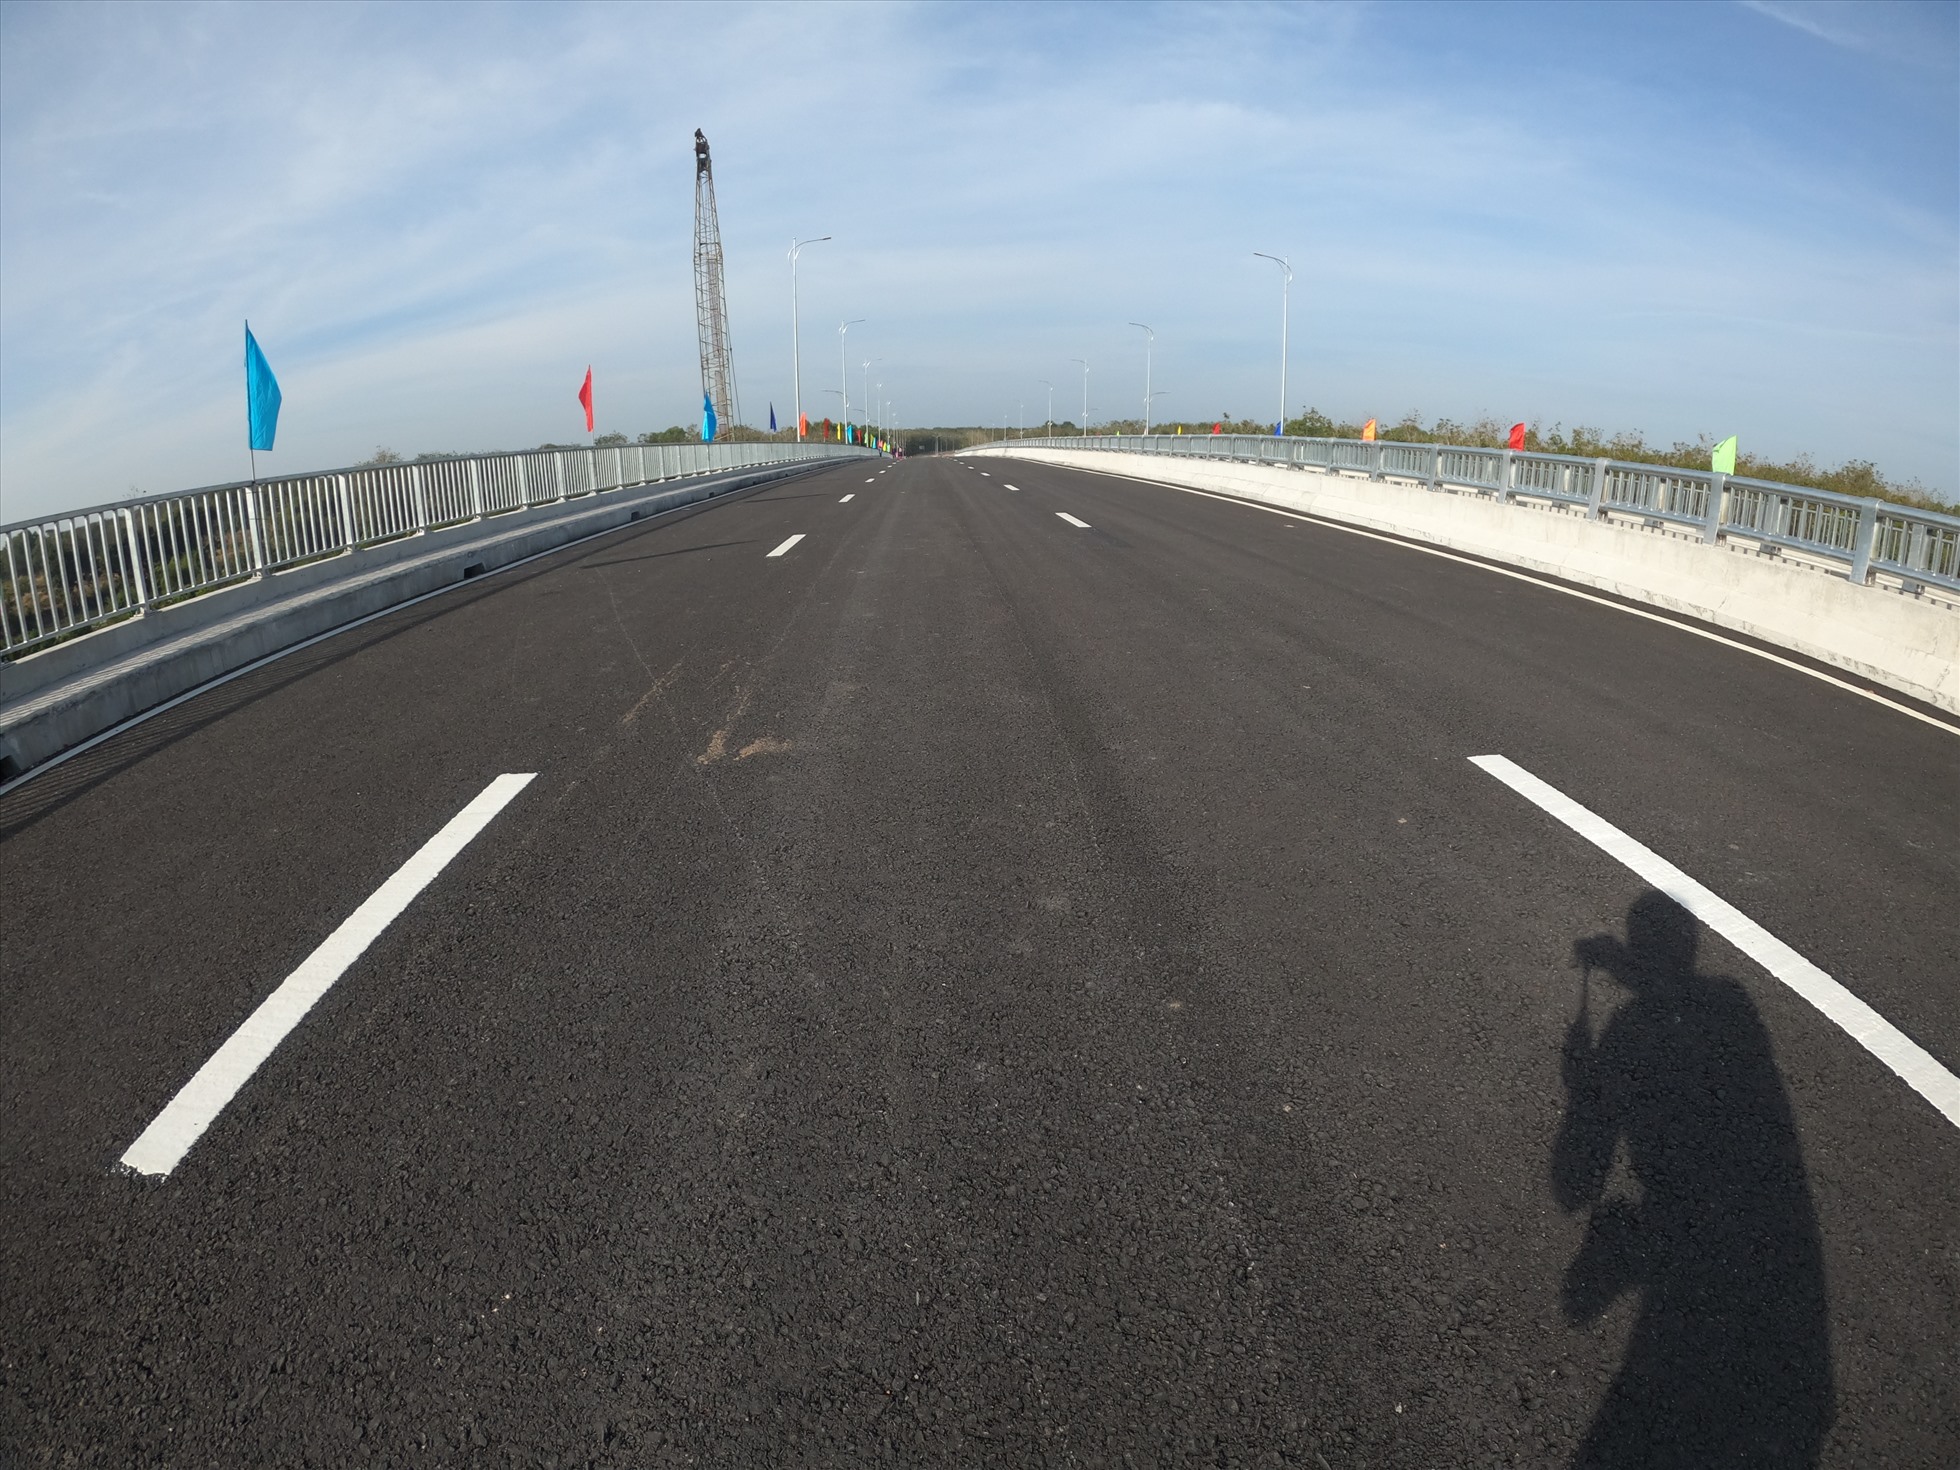 Điểm đầu của dự án giao với đường ĐT.744, thuộc khu phố 6 thi trấn Dầu Tiếng, tỉnh Bình Dương. Điểm cuối đấu nối vào dự án Đường Đất Sét-Bến Củi do phía Tây Ninh làm Chủ Đầu tư tại huyện Dương Minh Châu, tỉnh Tây Ninh.